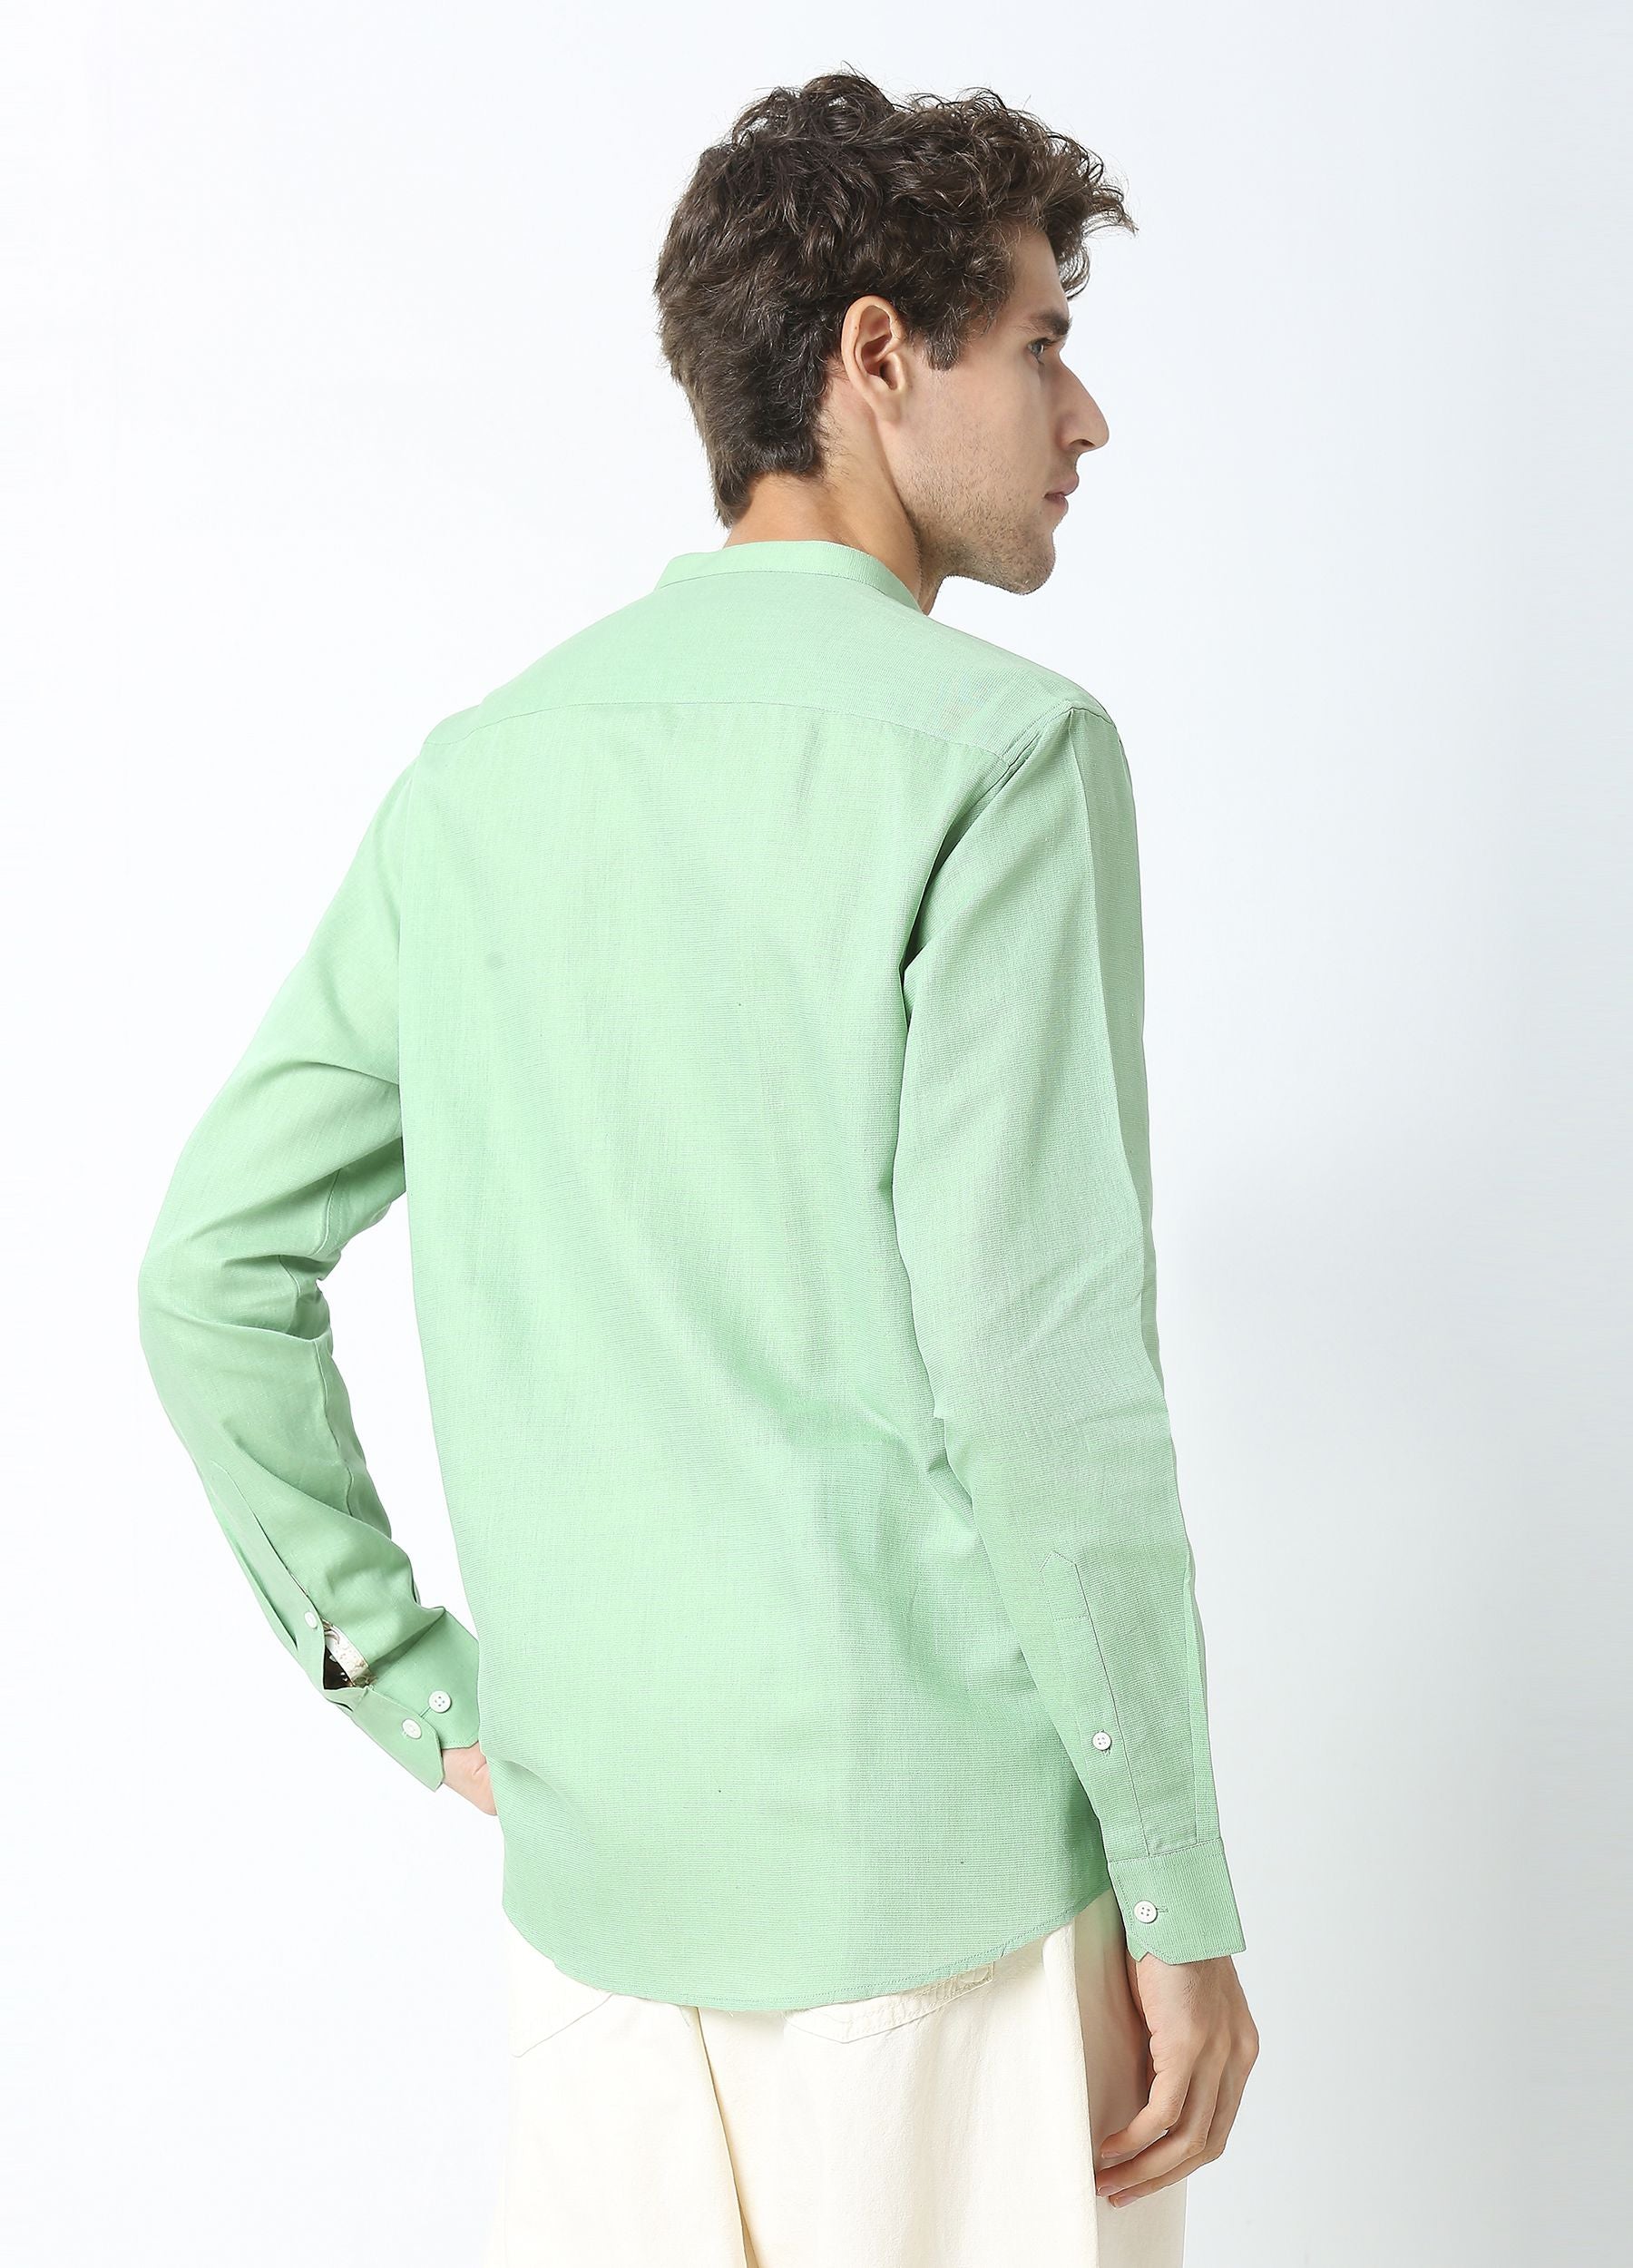 Band Collar Linen Blend Solid Shirt - Basil Green